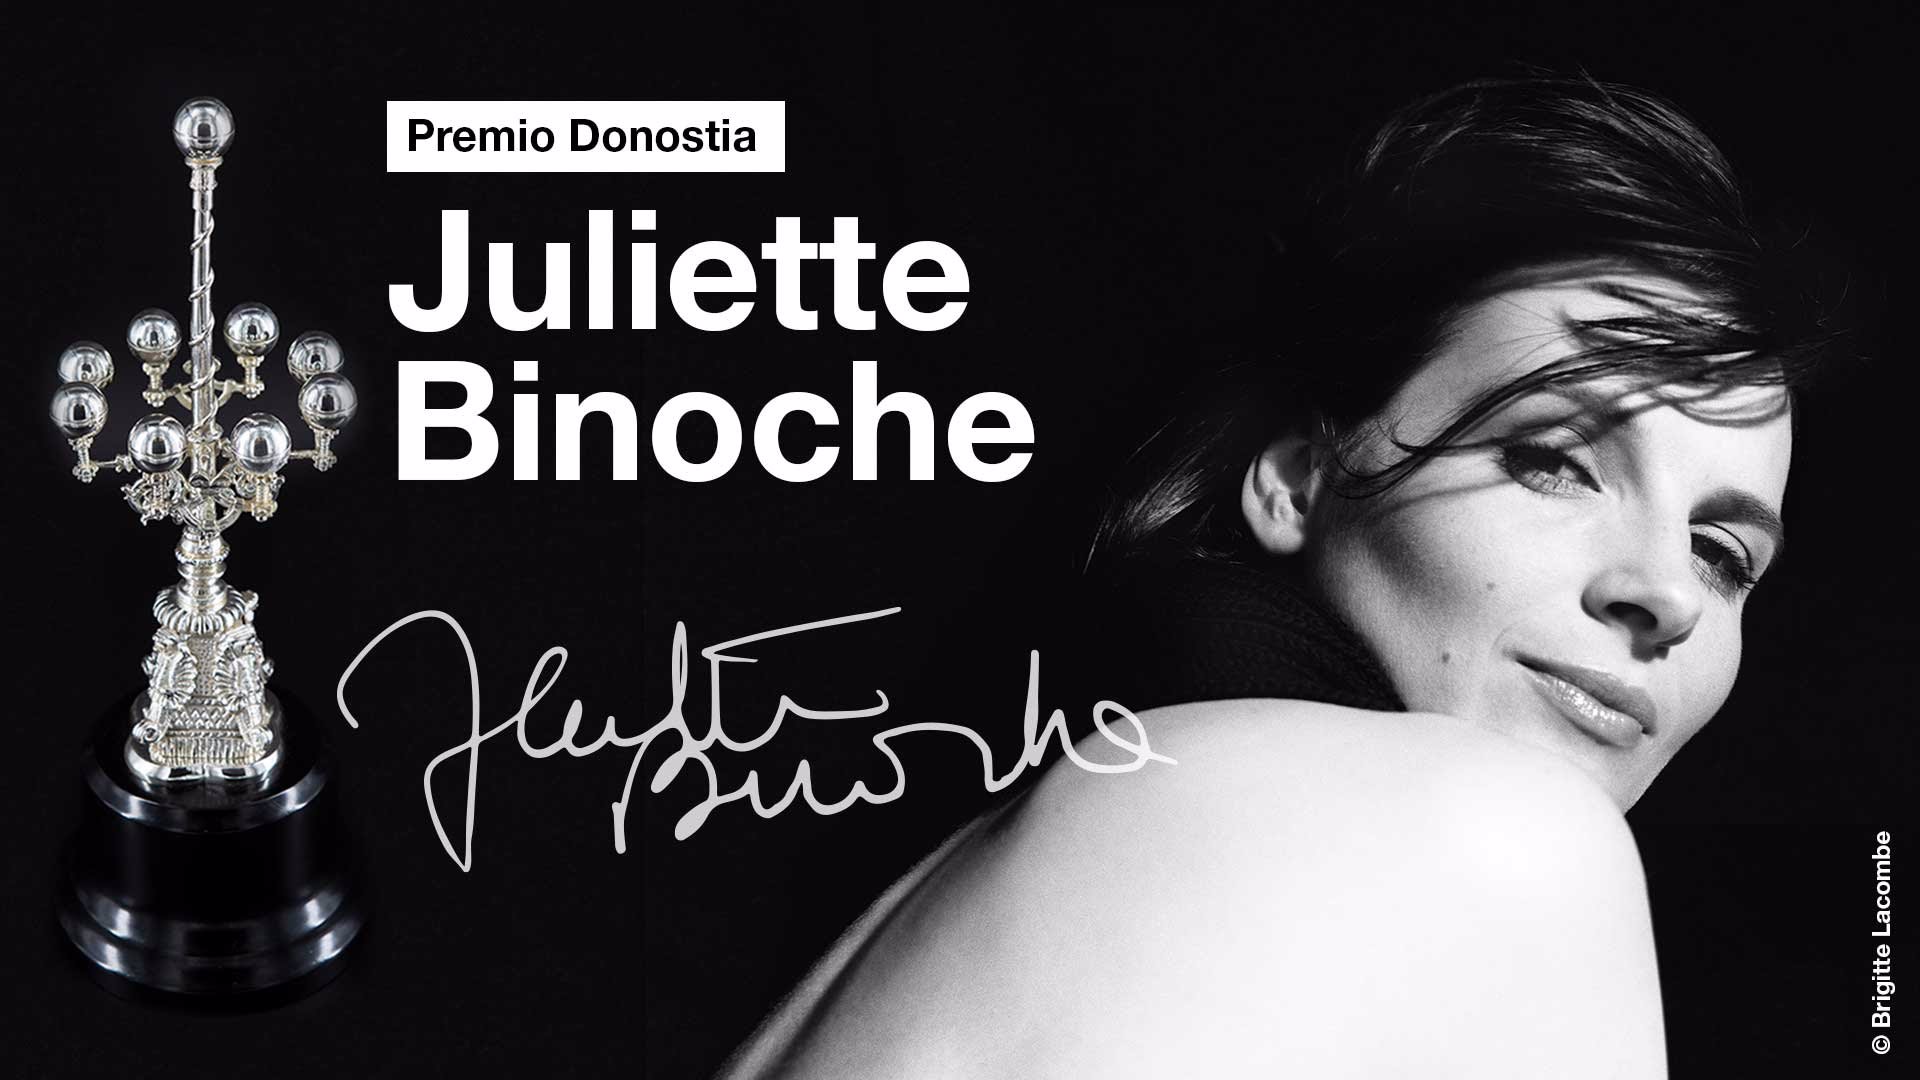 Juliette Binoche recibirá  un premio Donostia